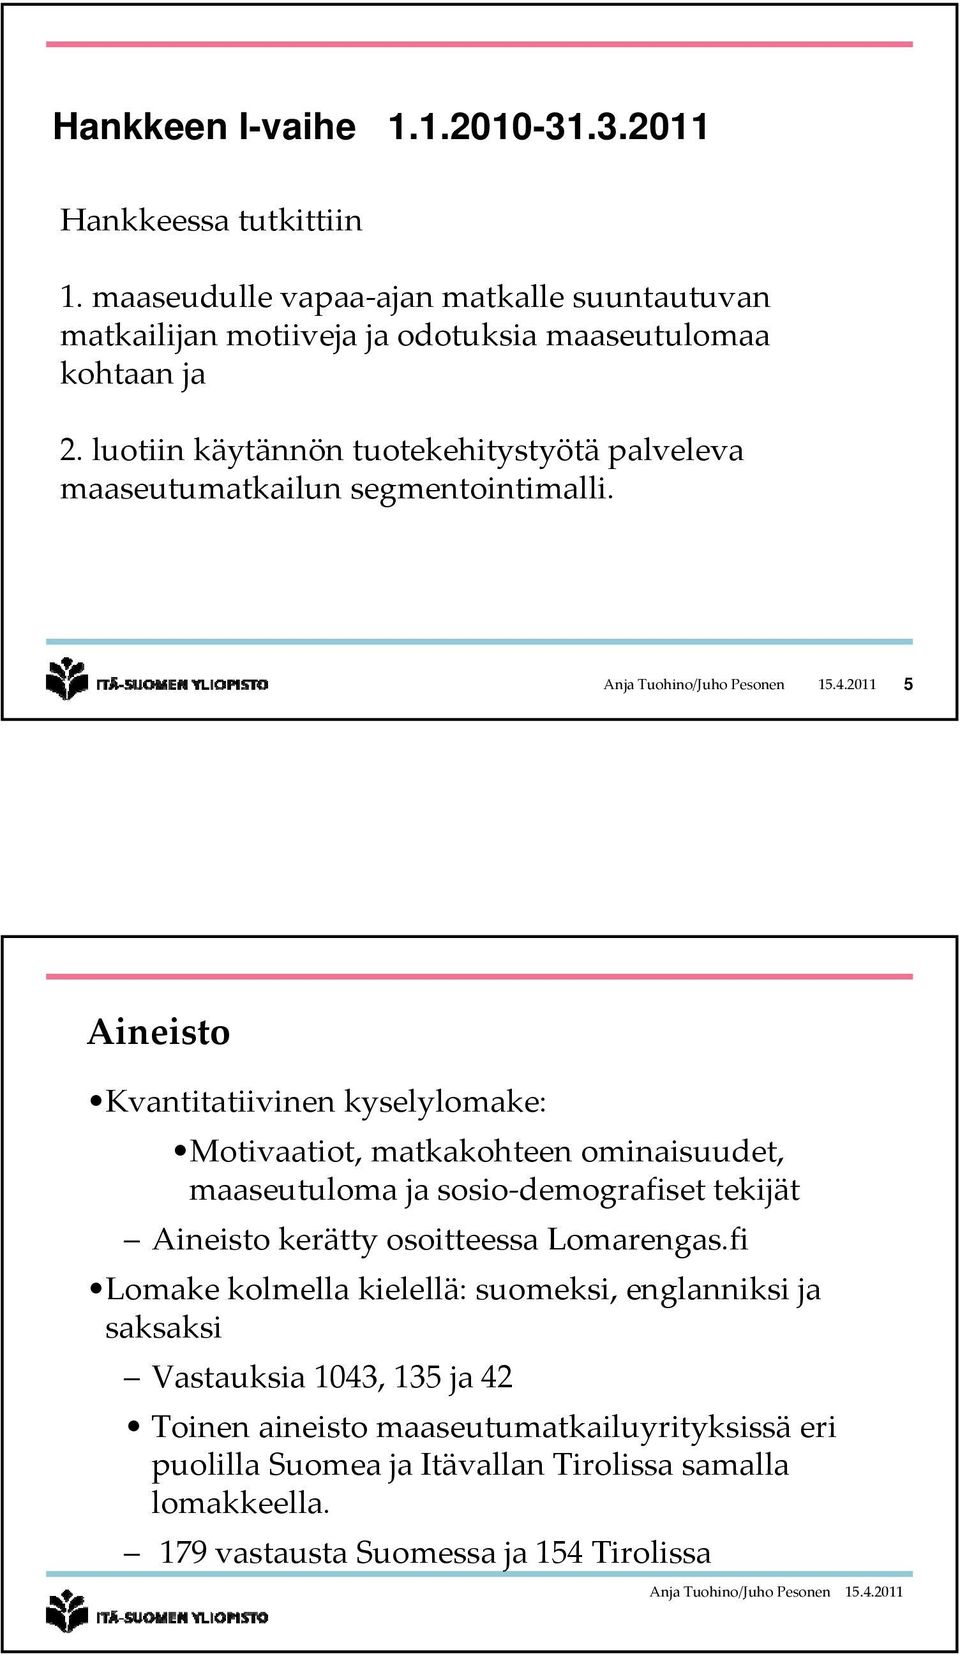 2011 5 Aineisto Kvantitatiivinen kyselylomake: Motivaatiot, matkakohteen ominaisuudet, maaseutuloma ja sosio demografiset tekijät Aineisto kerätty osoitteessa Lomarengas.